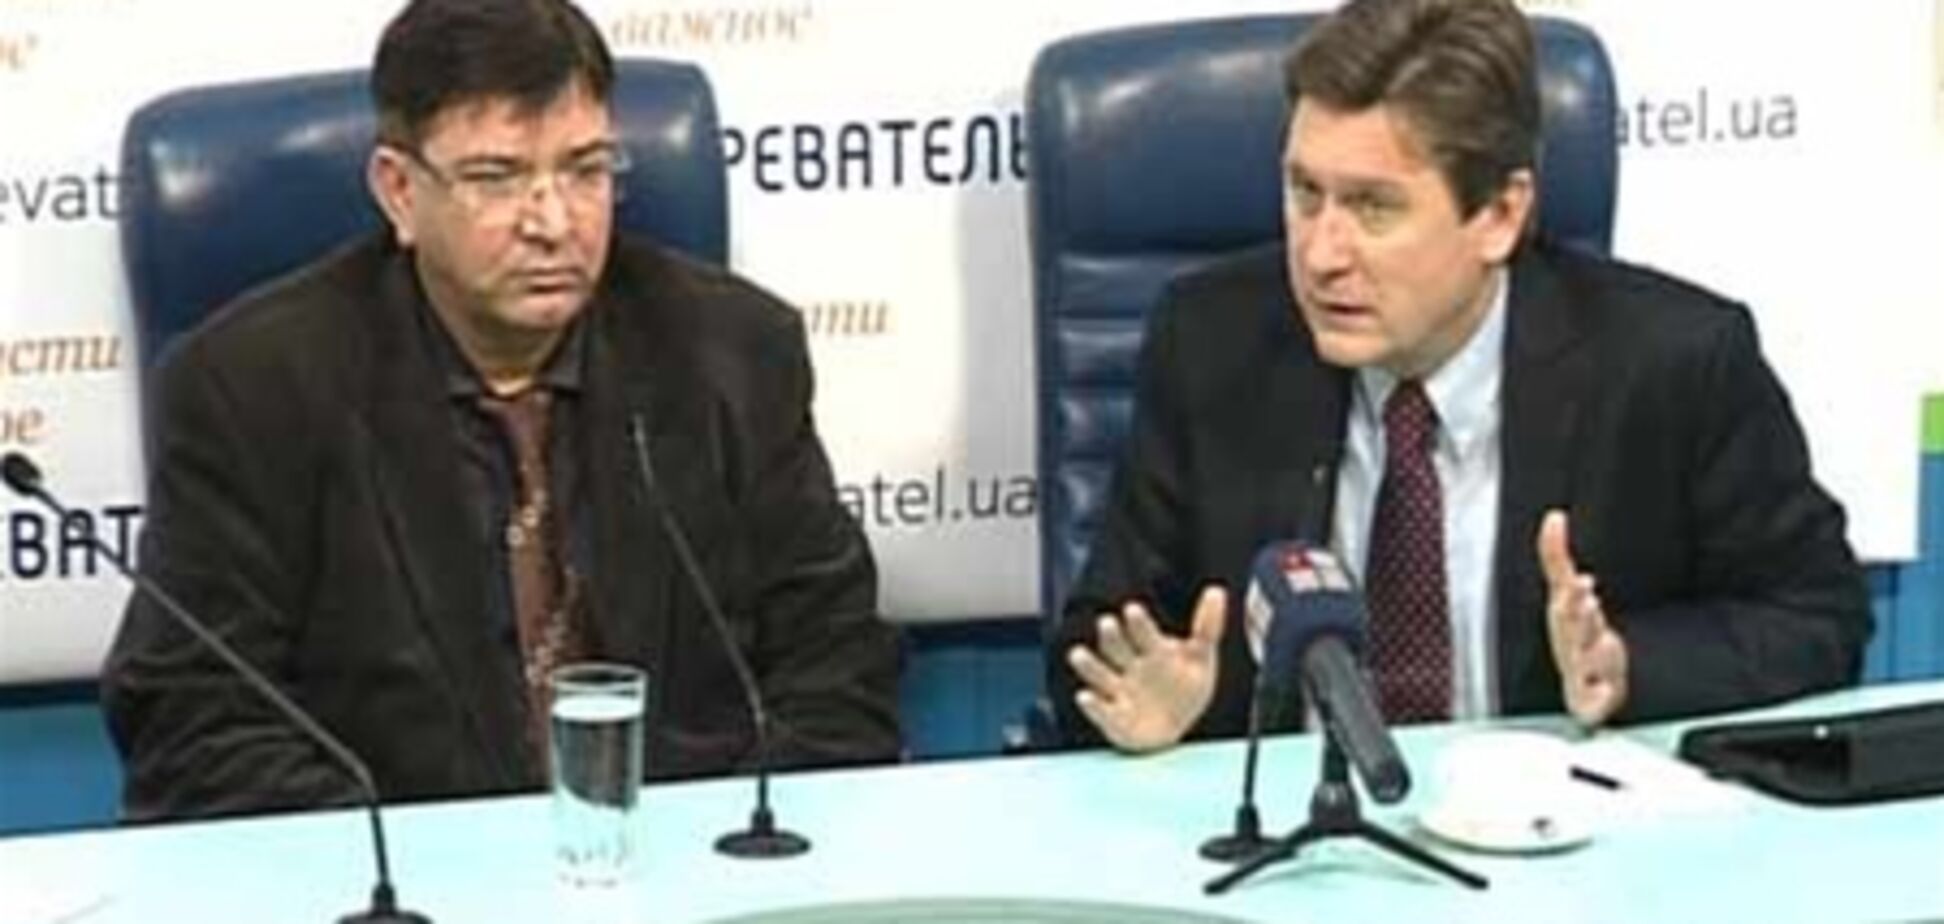 Експерти розповіли, стратять чи Тимошенко